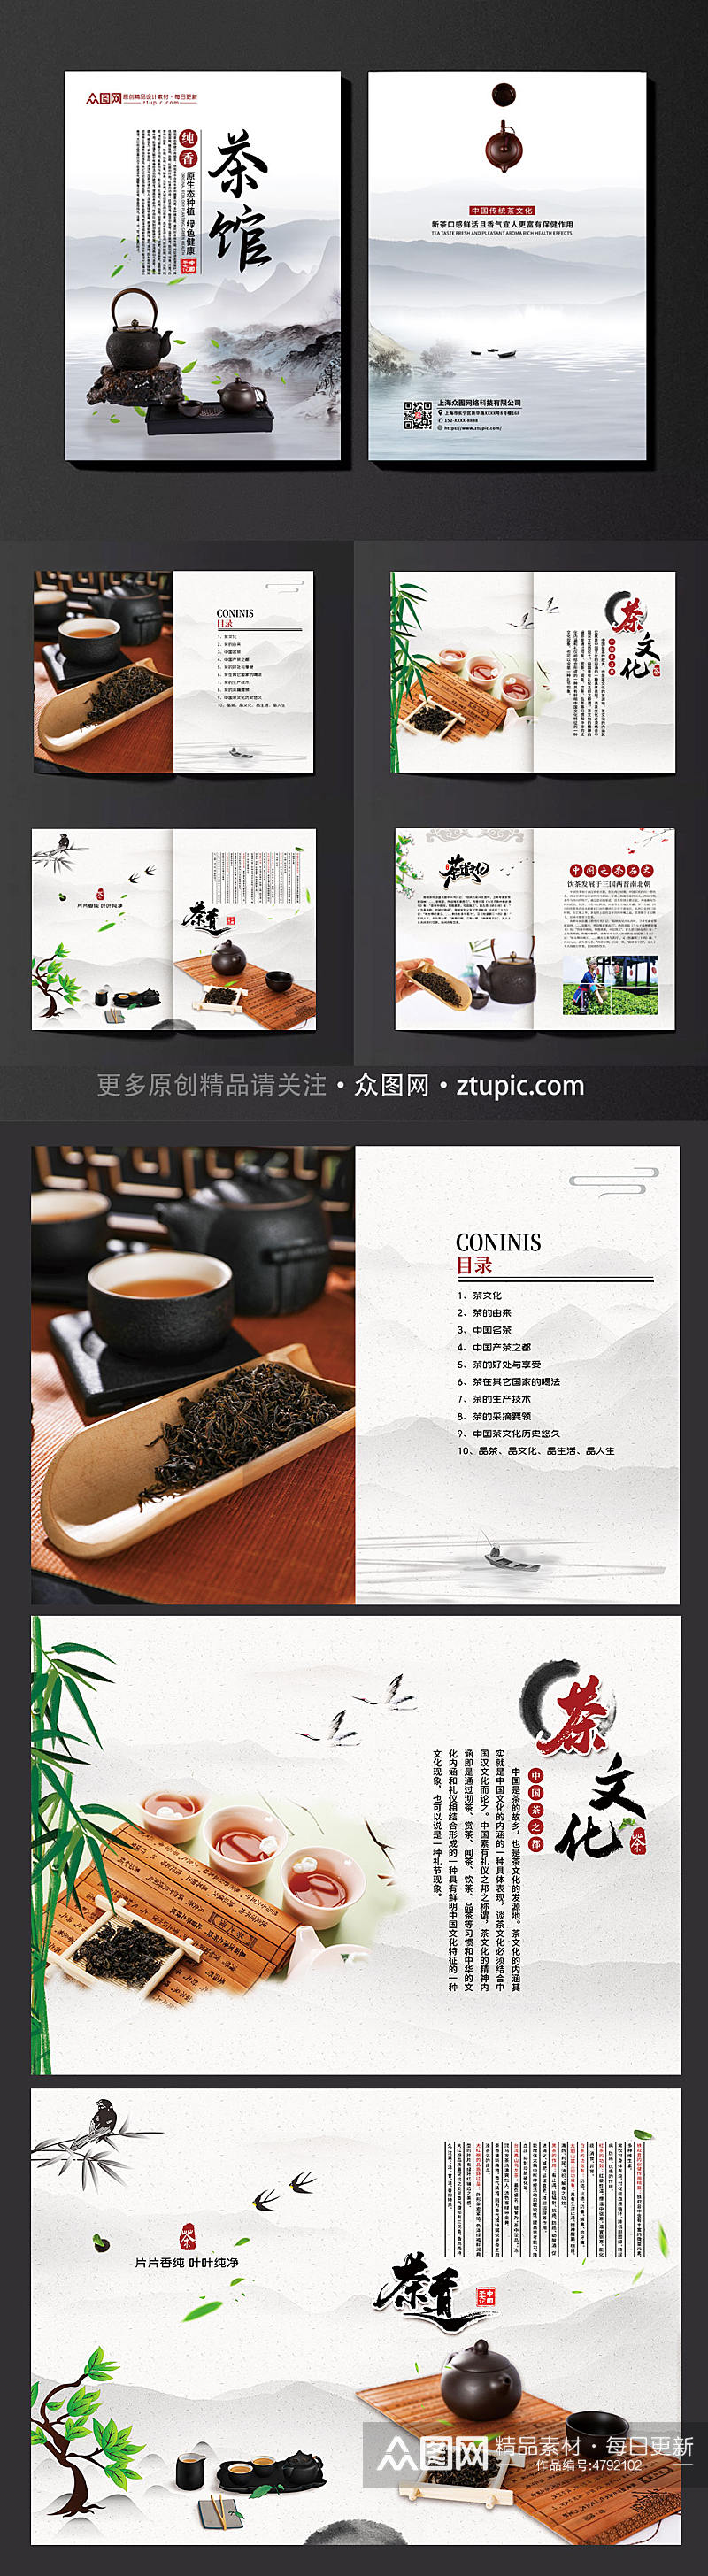 中国风茶馆茶艺宣传画册素材